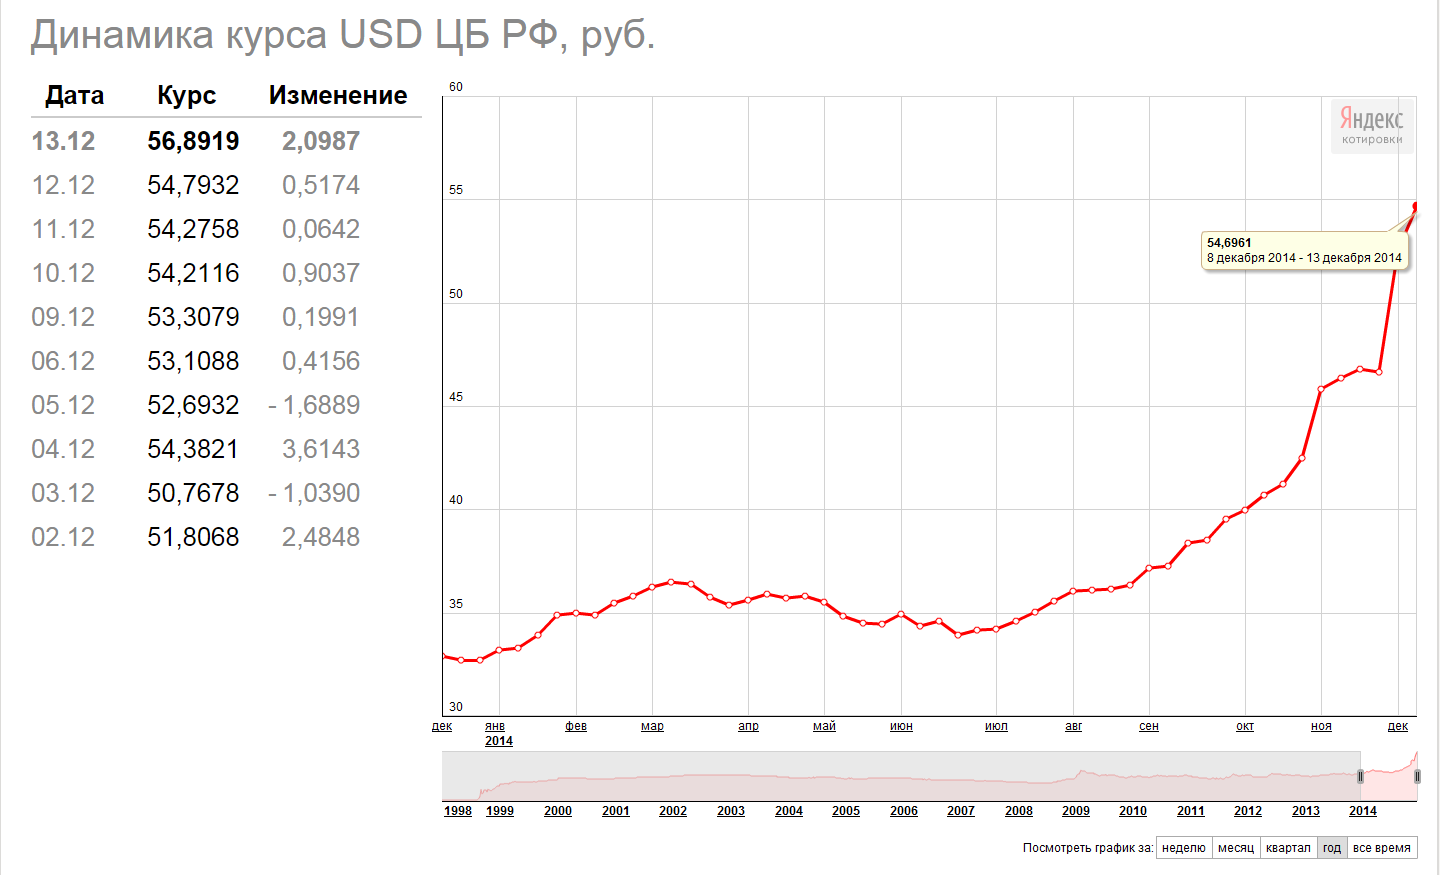 Будет ли девальвация рубля в 2014 году?